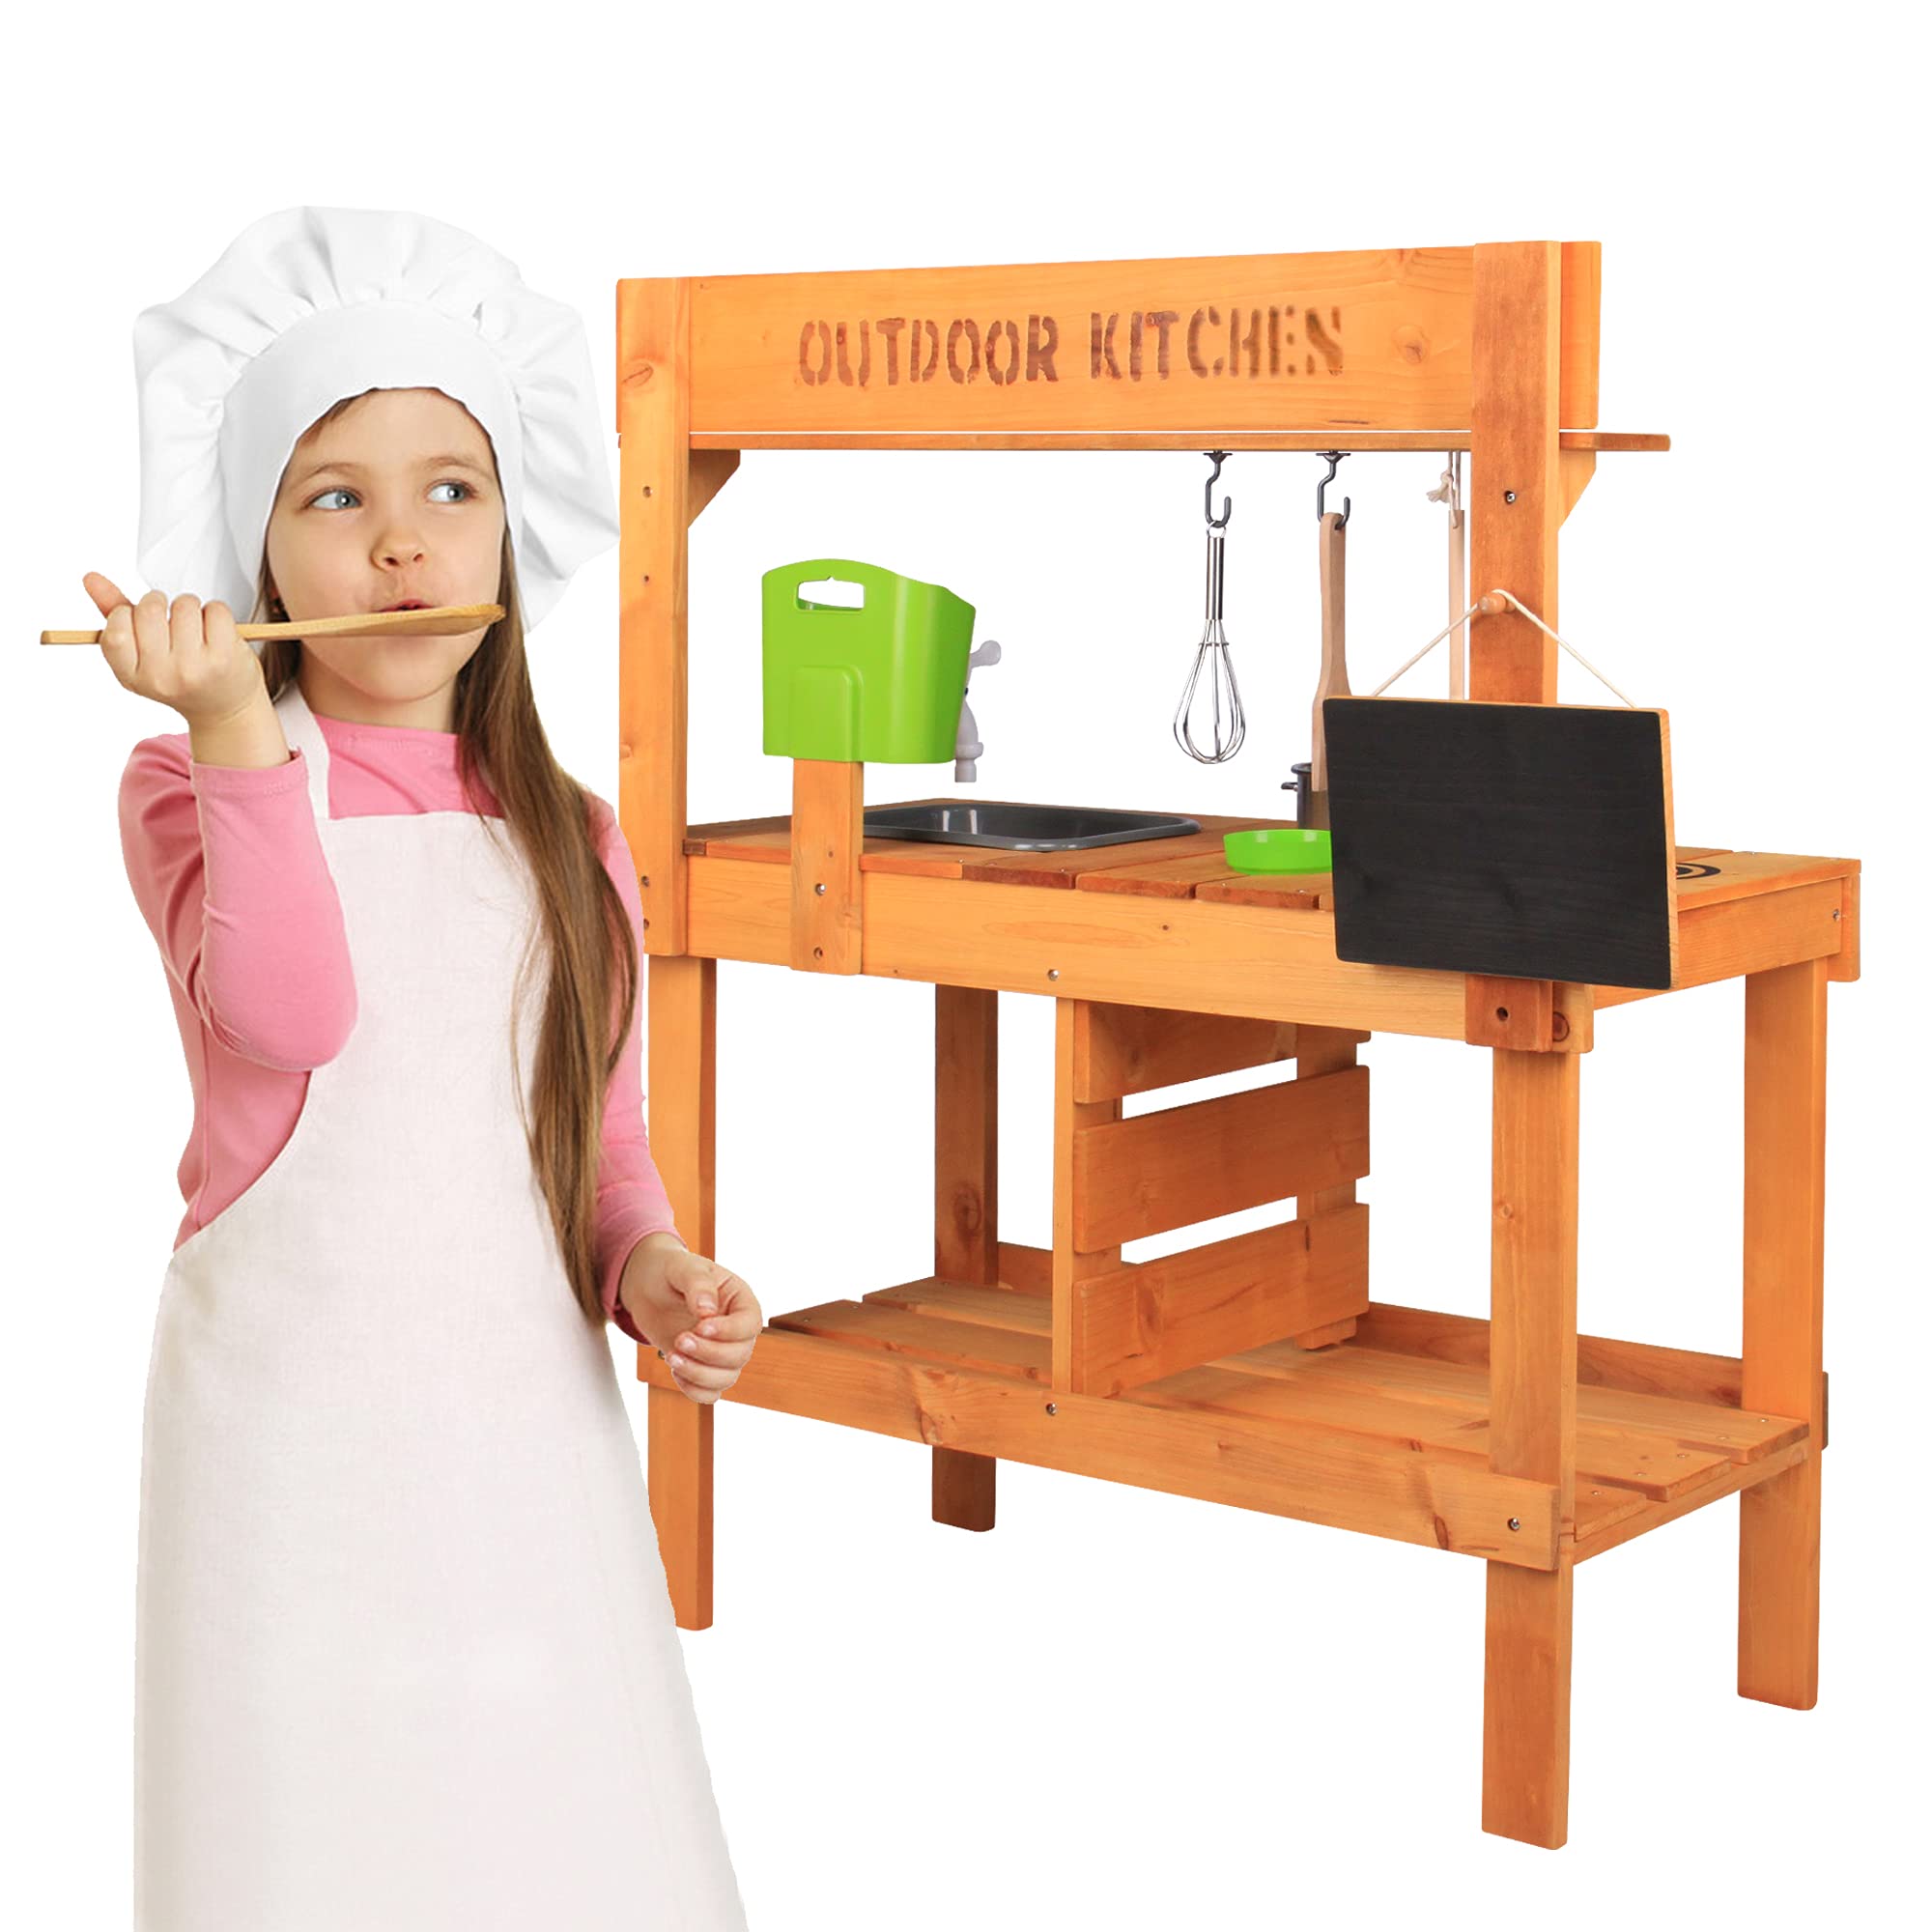 Aoparts Mud Kitchen, Play Kitchen, Kitchen Accessories and Garden Sink, Kids Outdoor Kitchen Playset with Faucet, Mud Kitchen for Kids Outdoor